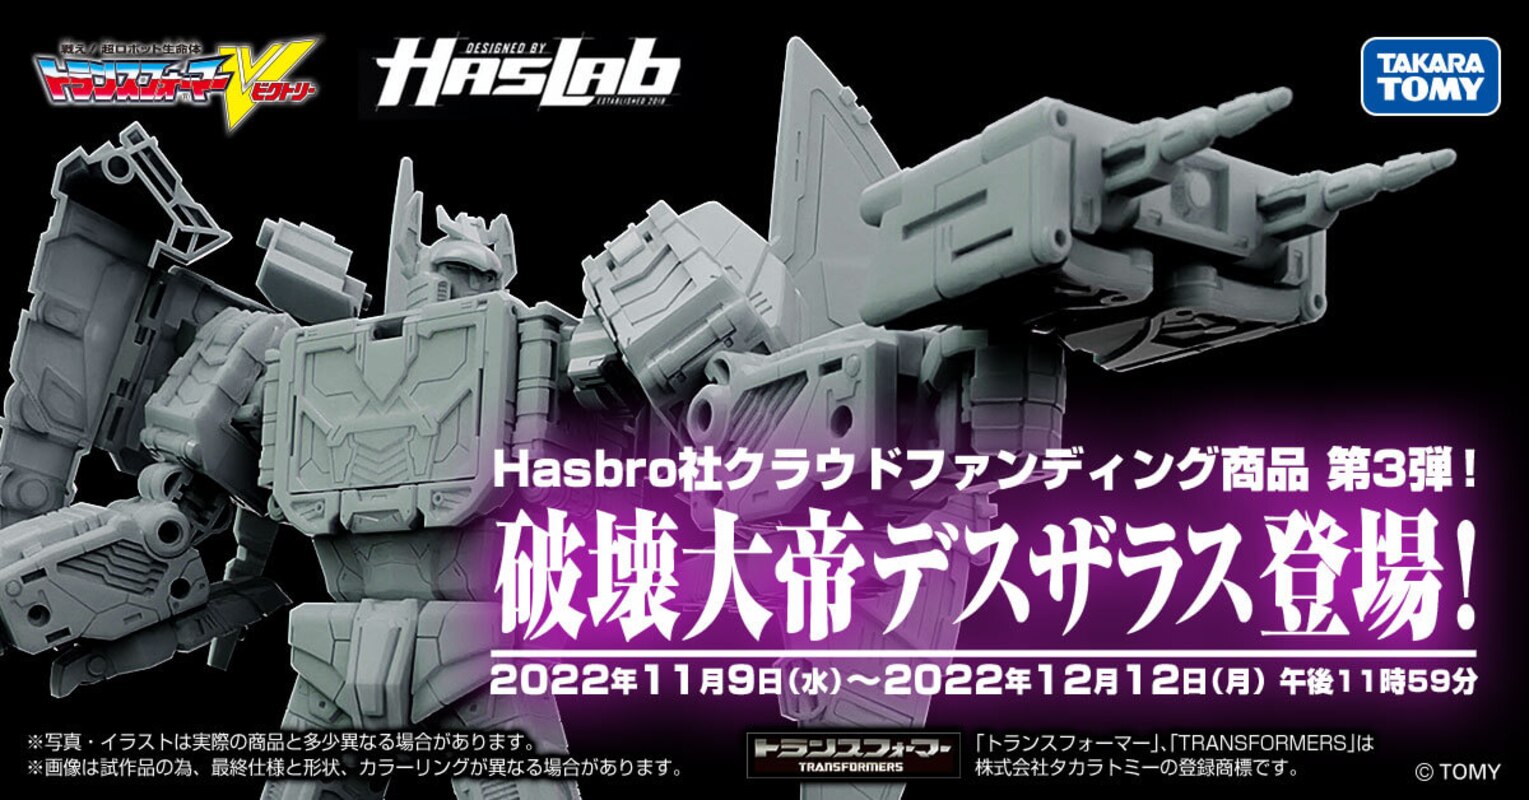 Transformers HasLab Victory Deathsaurus Crowdfunding Opens in Japan